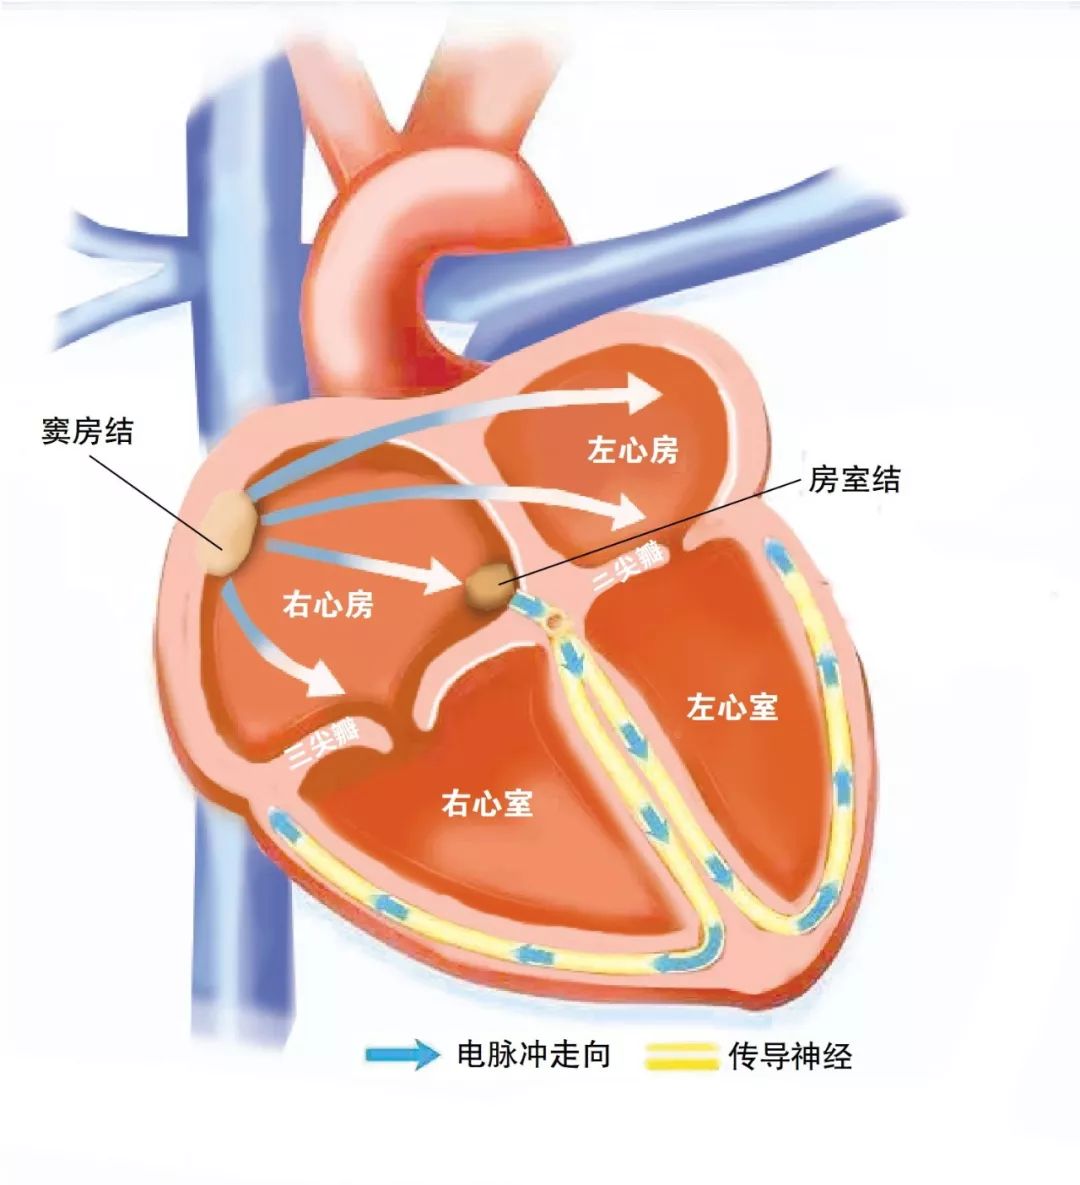 大家先看一下心脏的结构图.